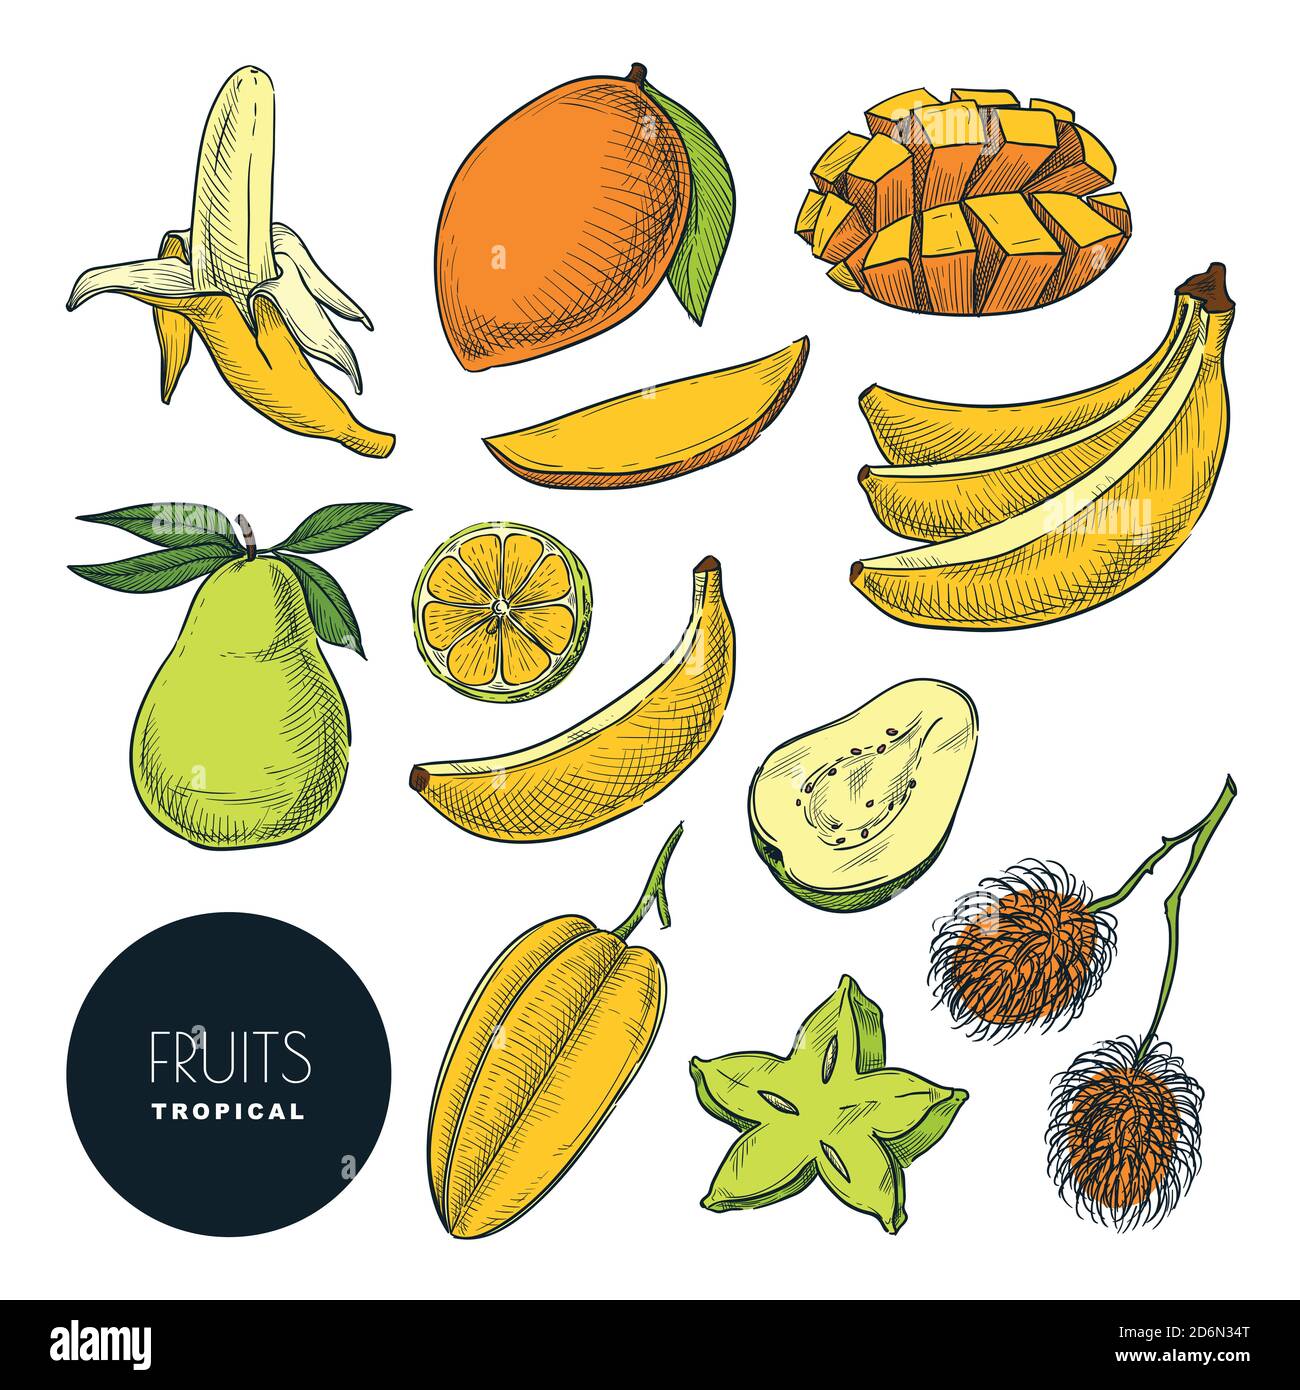 Bananen und andere tropische exotische Früchte. Vektorfarbe Skizze Illustration. Handgezeichnete Design-Elemente und Symbole gesetzt. Natürliche schmackhafte Essenssammlung. Stock Vektor